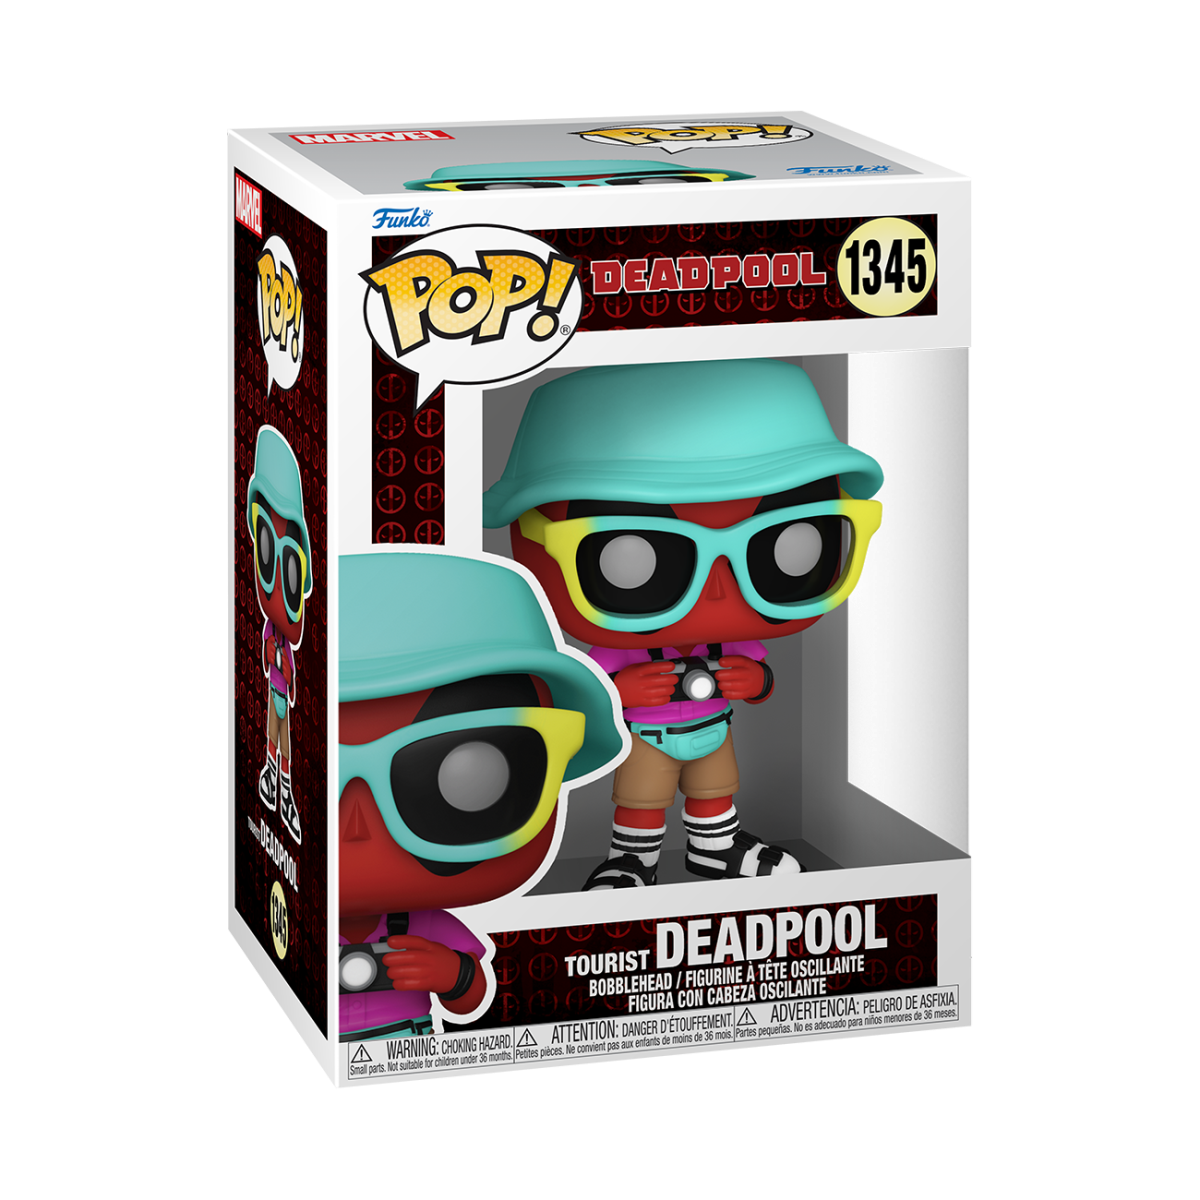 Deadpool - Tourist Deadpool Vinyl Figur 1345 - Funko Pop! Figur - multicolor